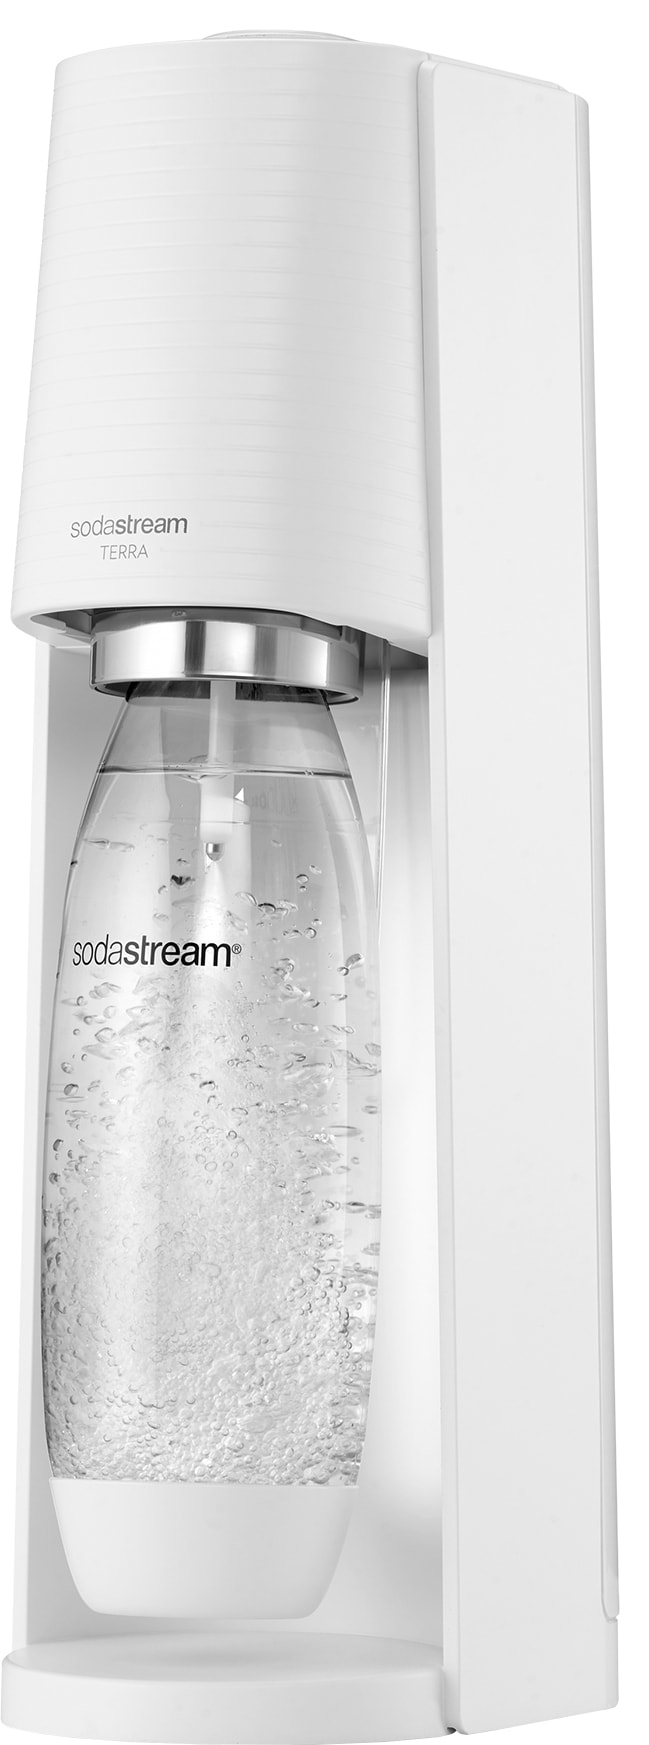 6: SodaStream Terra sodavandsmaskine SS1012801770 (hvid)